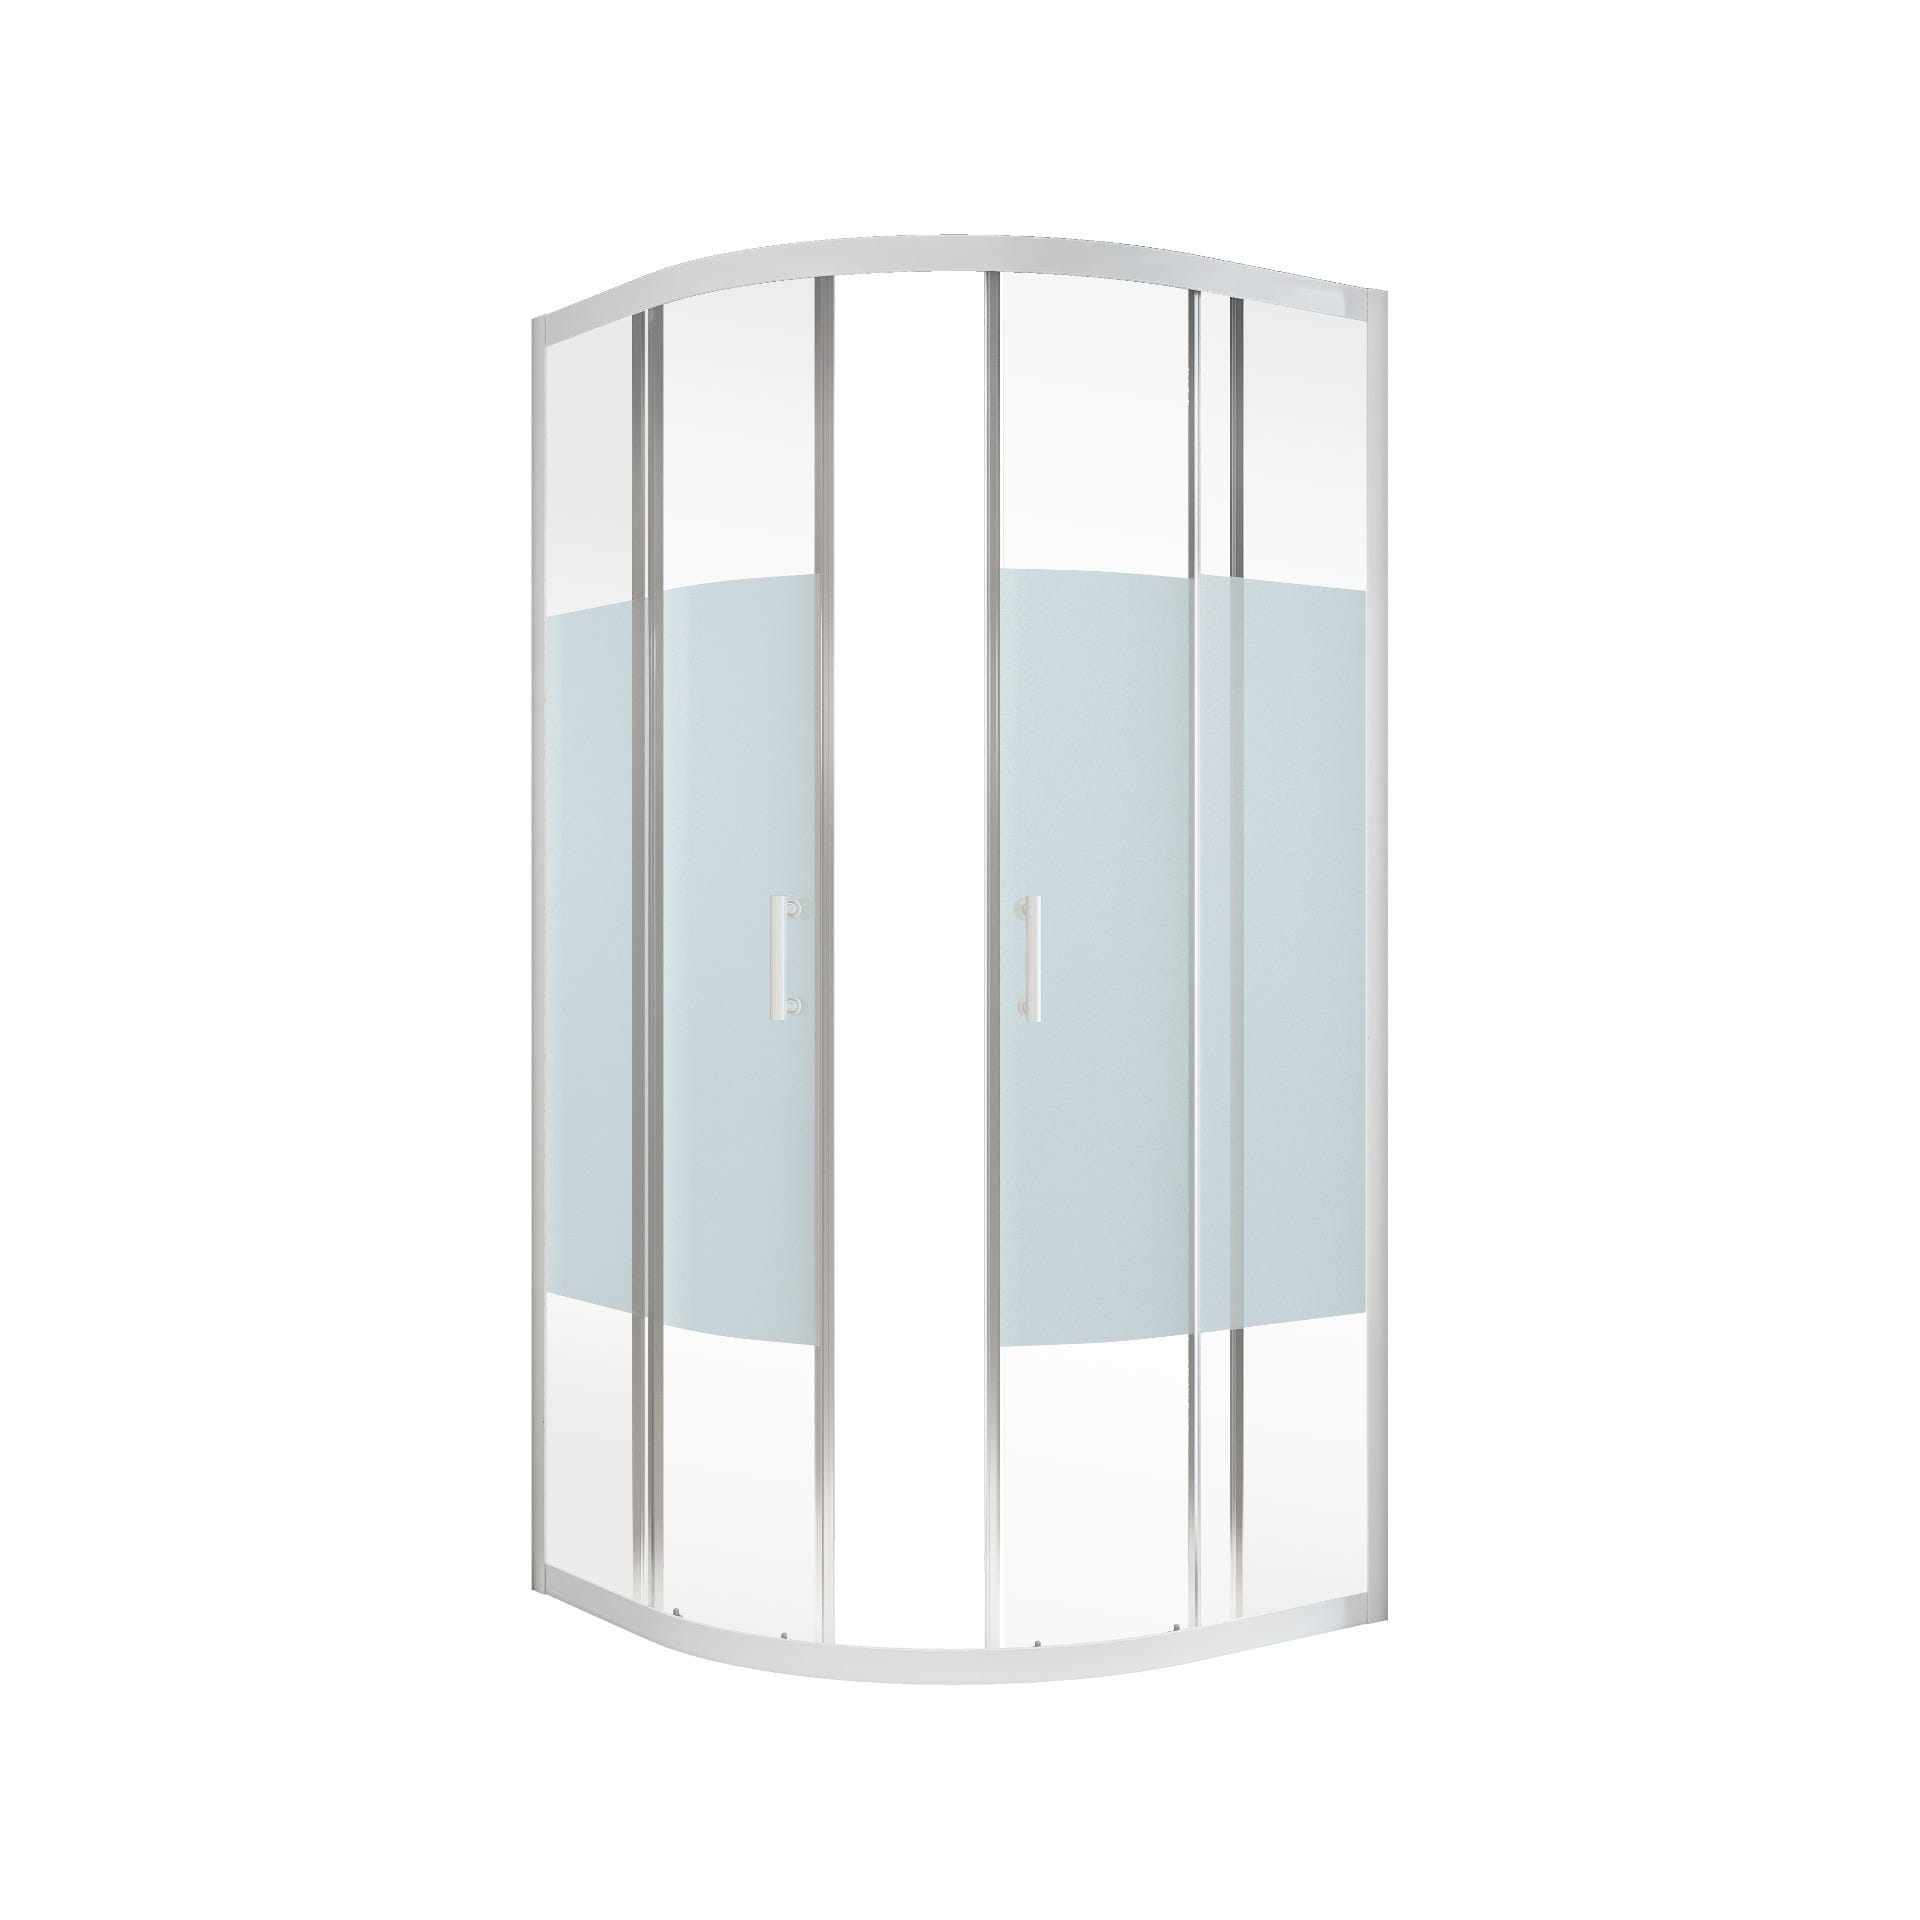 Schulte paroi de douche acces d'angle arrondi, 90 x 90 x 190 cm avec portes de douche coulissantes, 5 mm, verre sablé au milieu, profilé blanc, Sunny 1